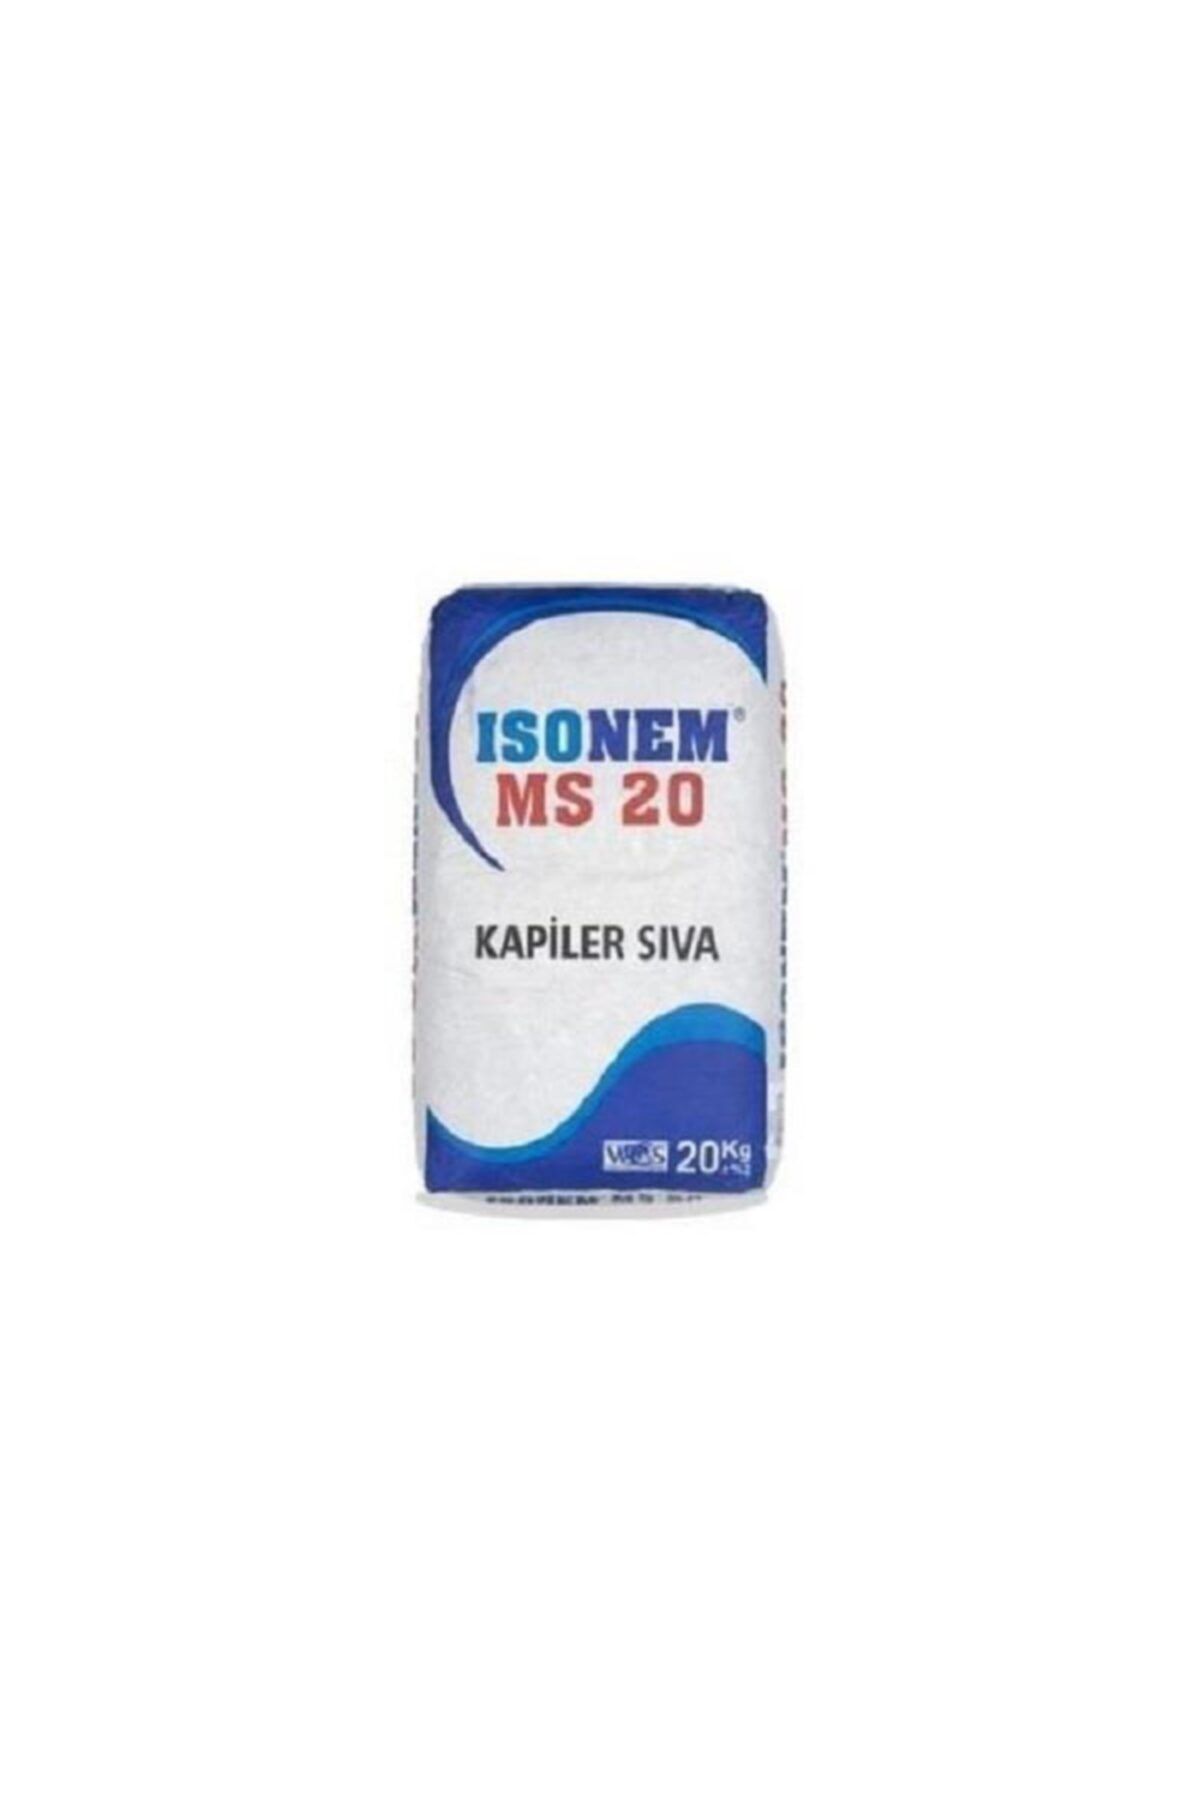 Isonem Ms 20 Kapiler Sıva 20 Kg